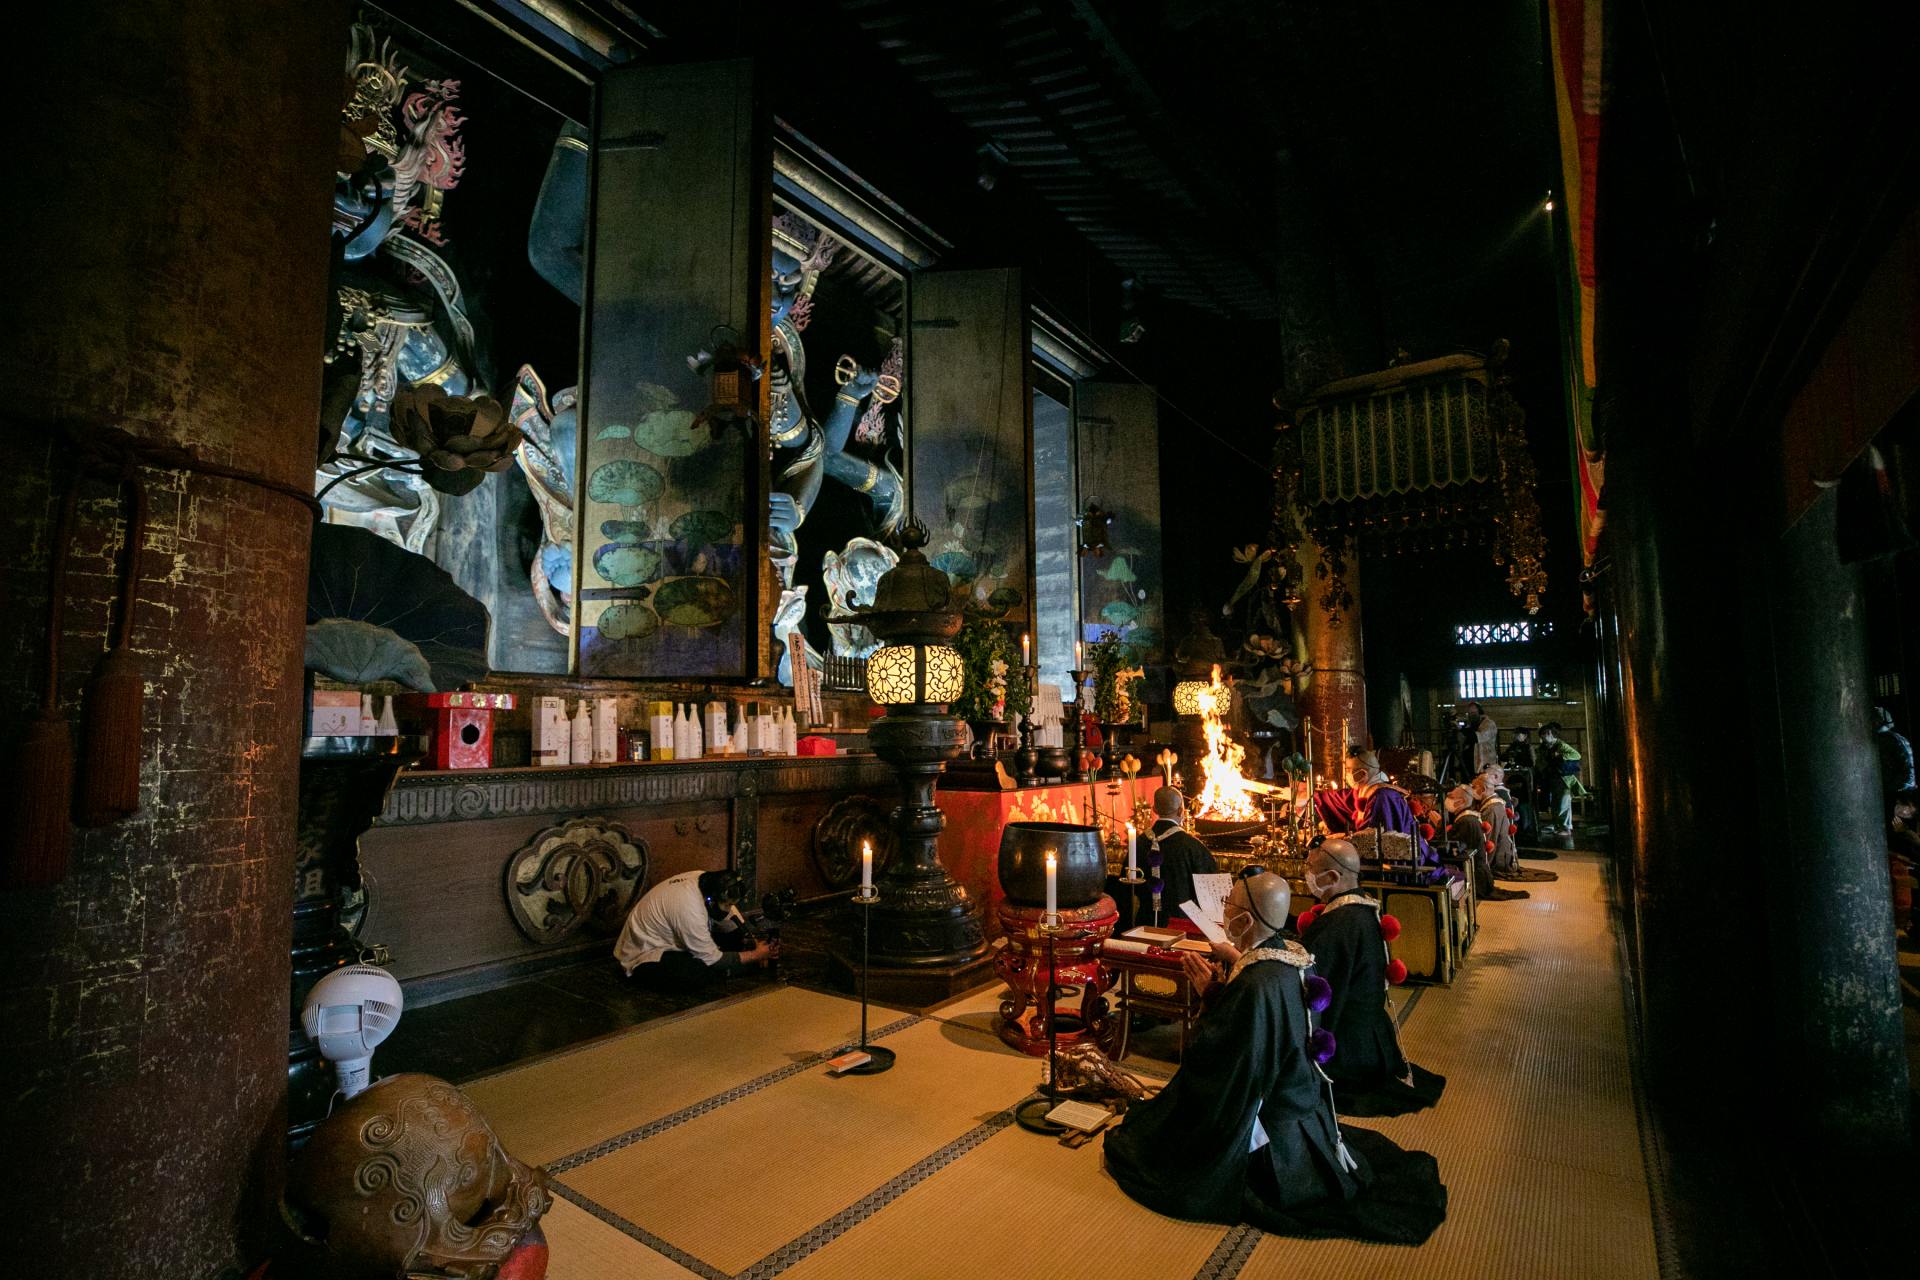 Si puede visitar durante el período de visualización especial, puede ver el principal objeto de culto, Kongo Zao Daigongen.